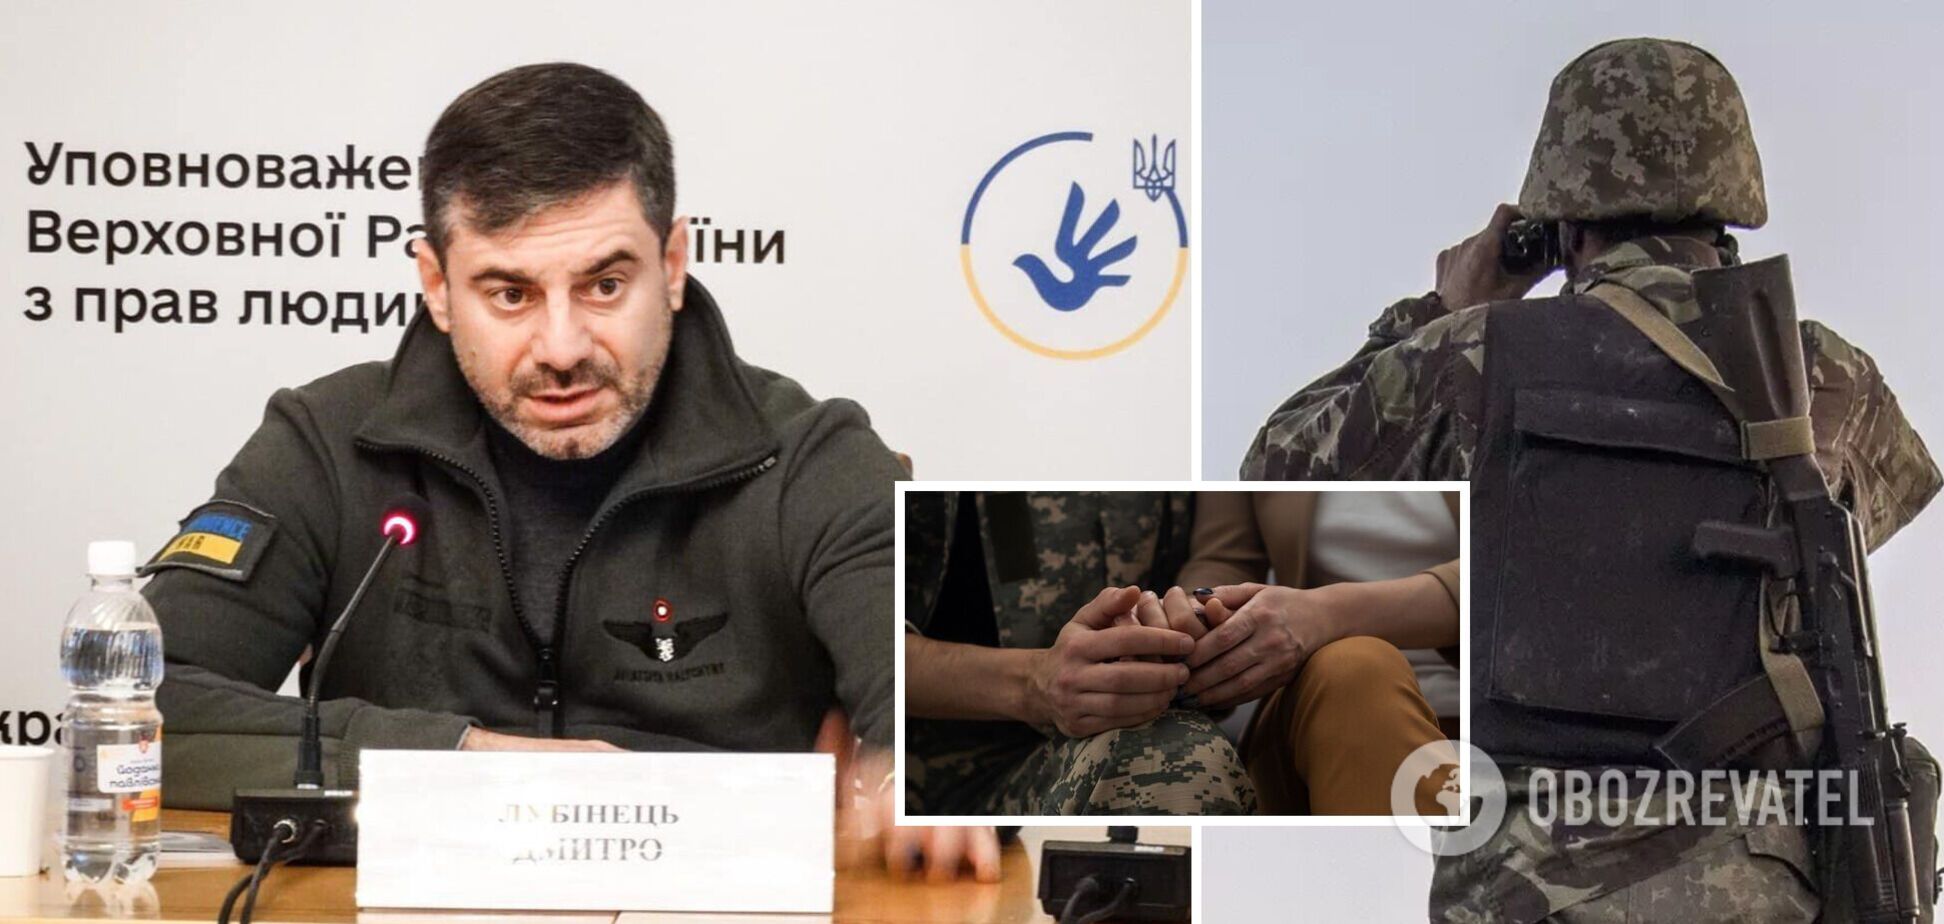 'Ситуация ужасающая': омбудсмен заявил, что 25 тыс. украинцев могут считаться пропавшими при особых обстоятельствах